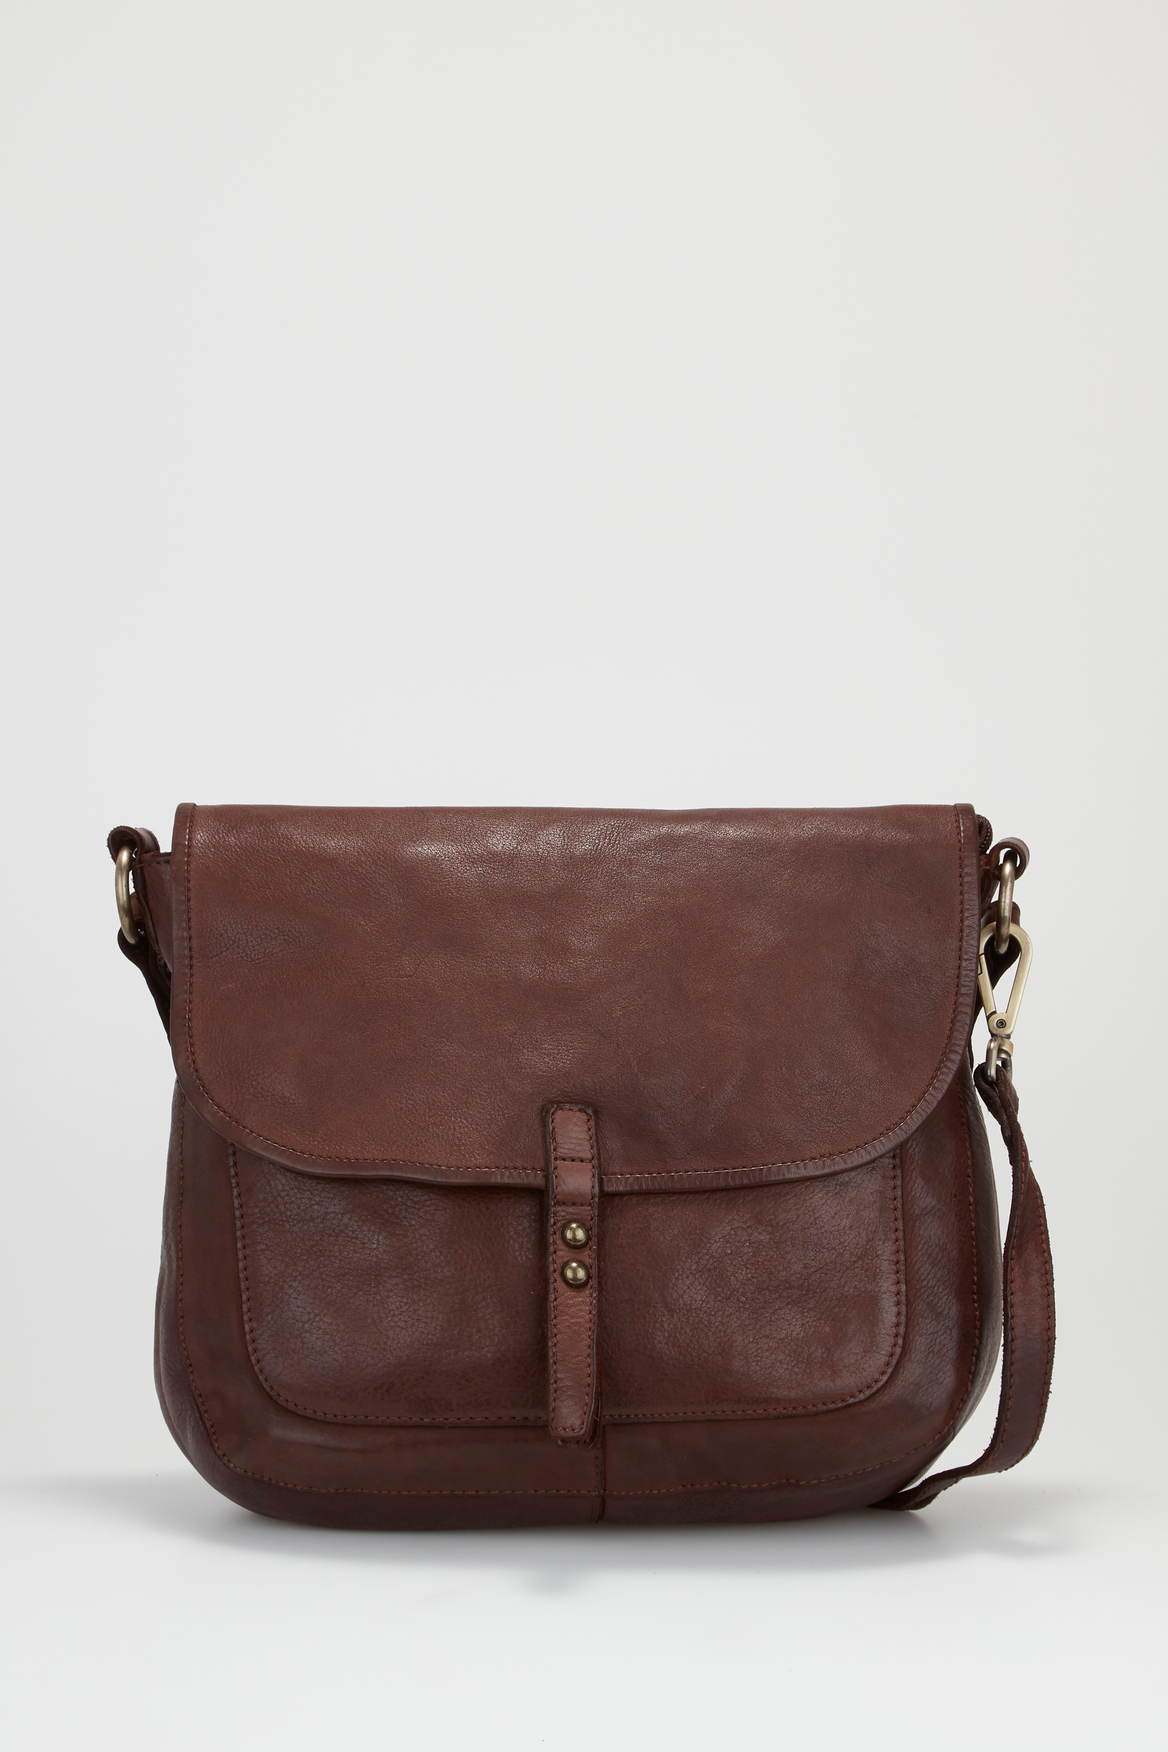 Evity Ari Leather Stud Satchel Bag – Strandbags Australia